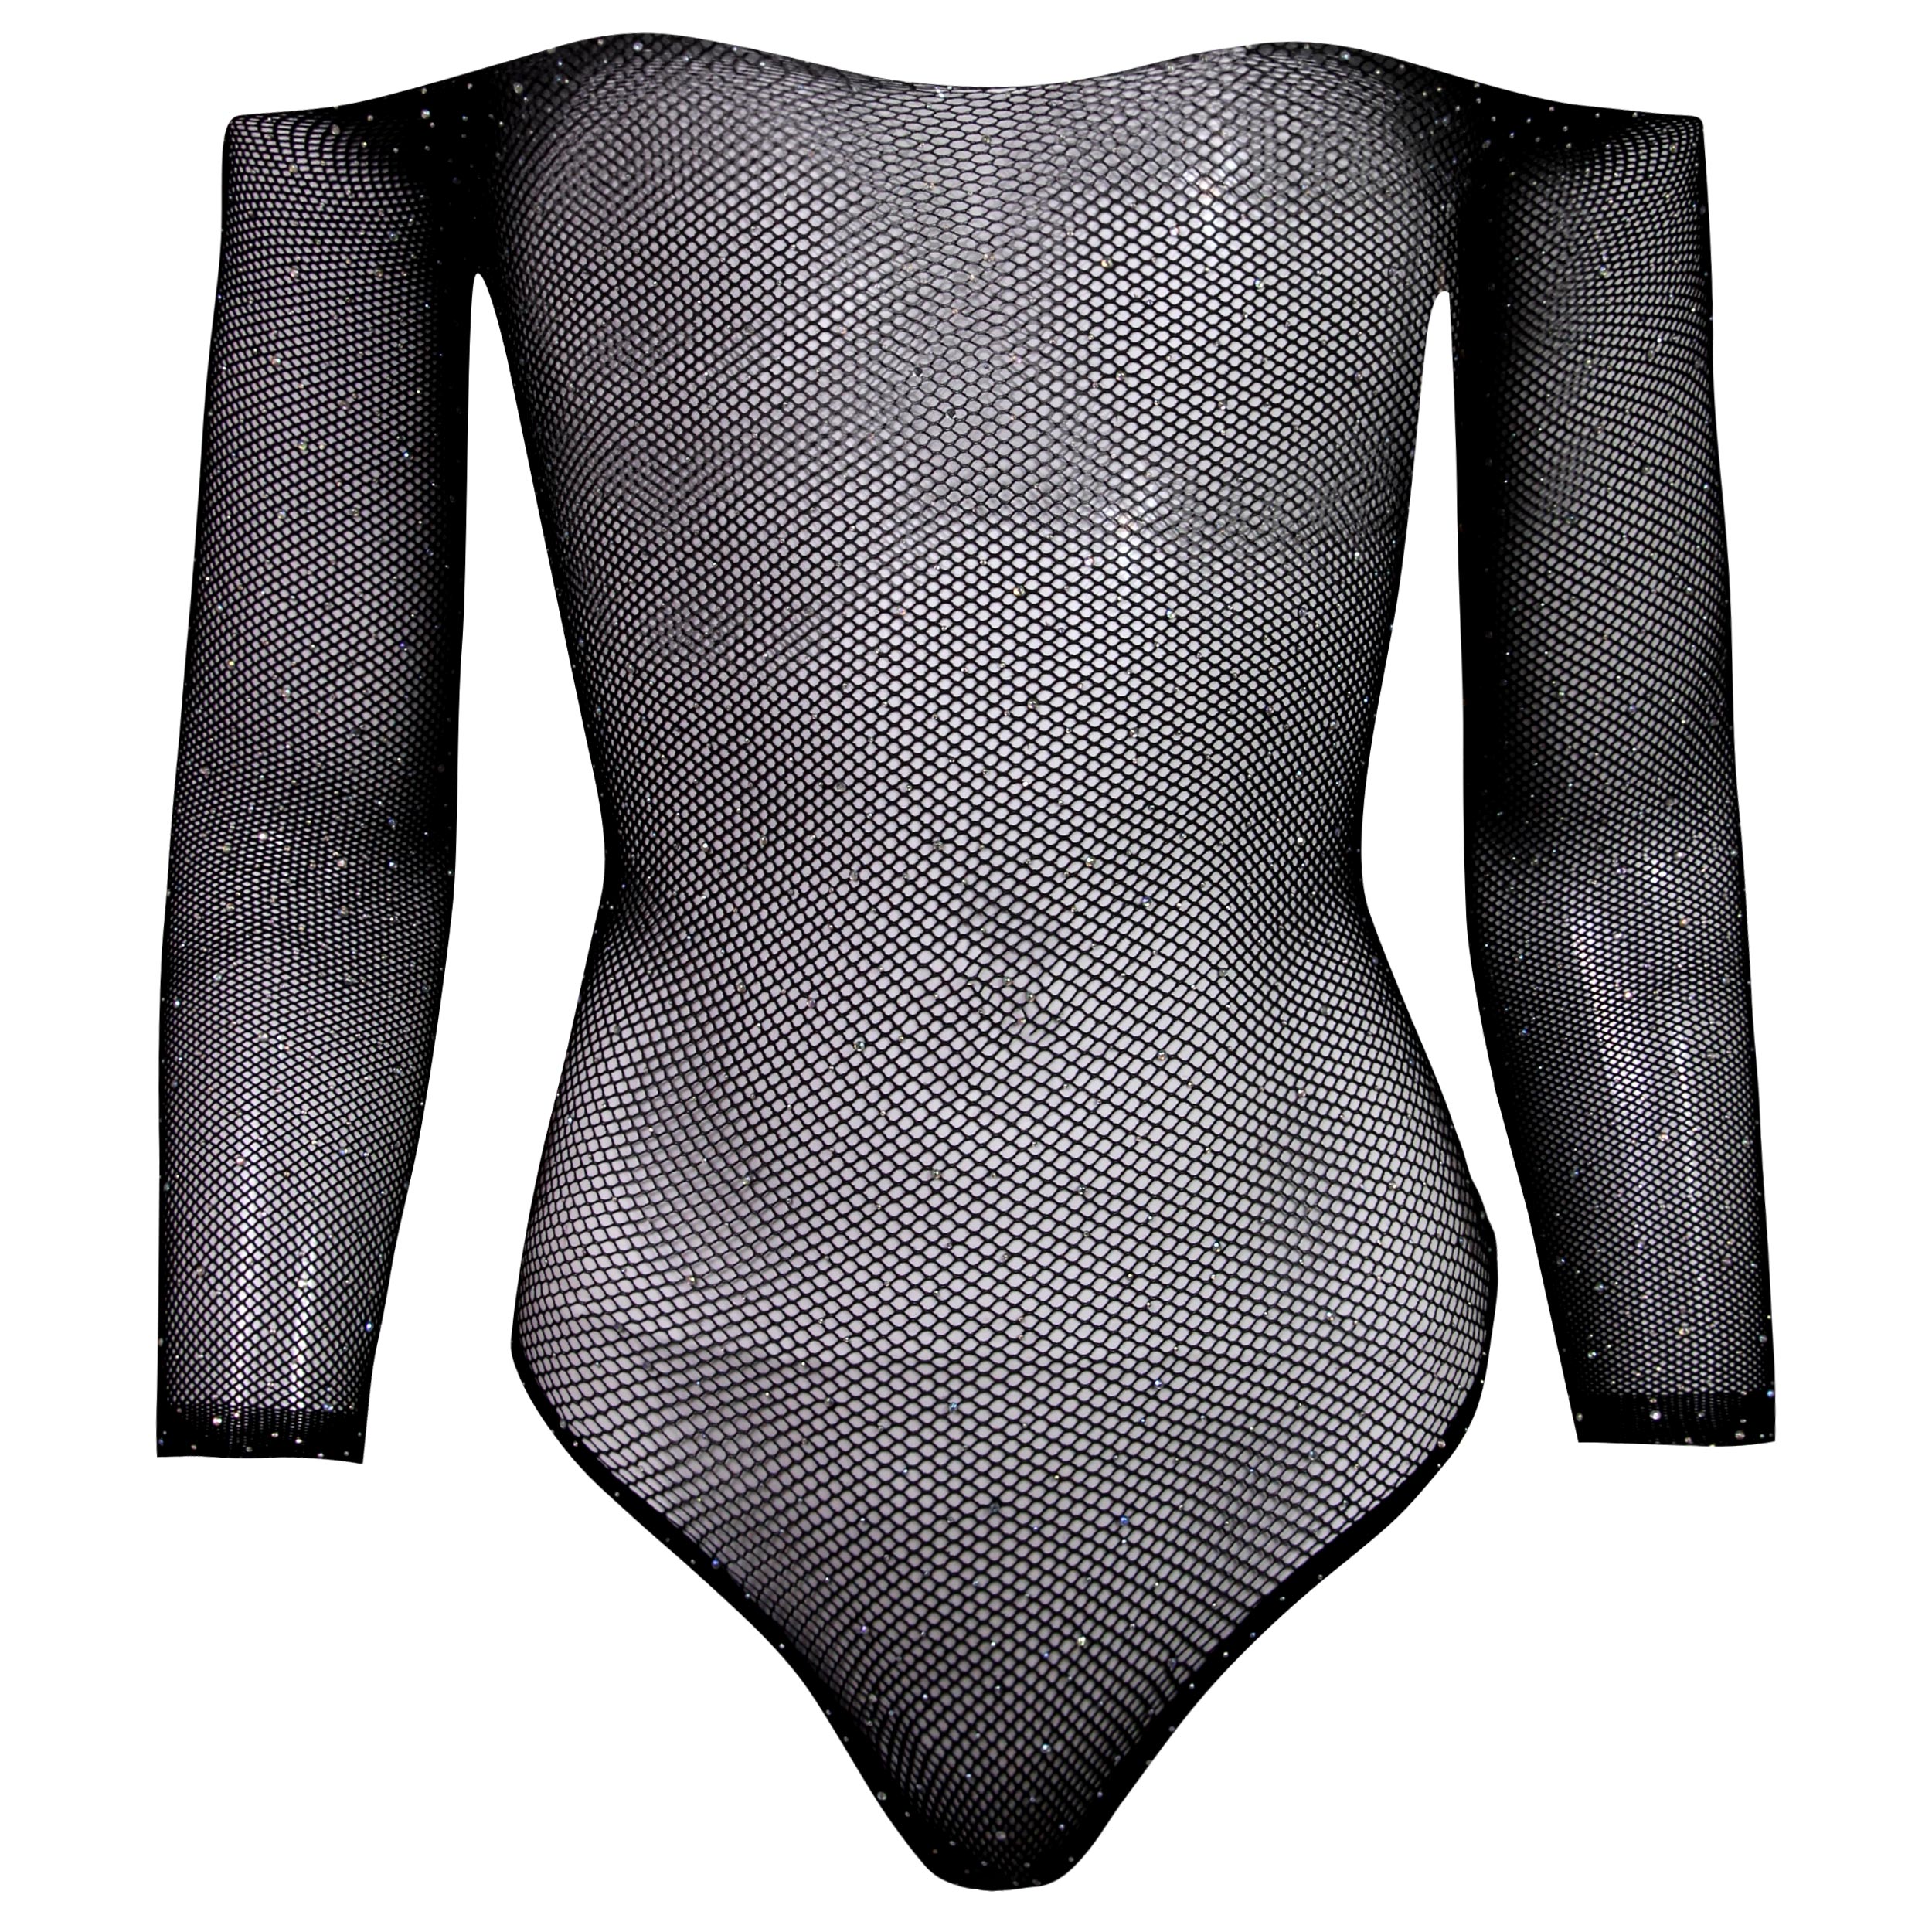 لباس خواب زنانه ماییلدا مدل فانتزی کد T1006 رنگ مشکی